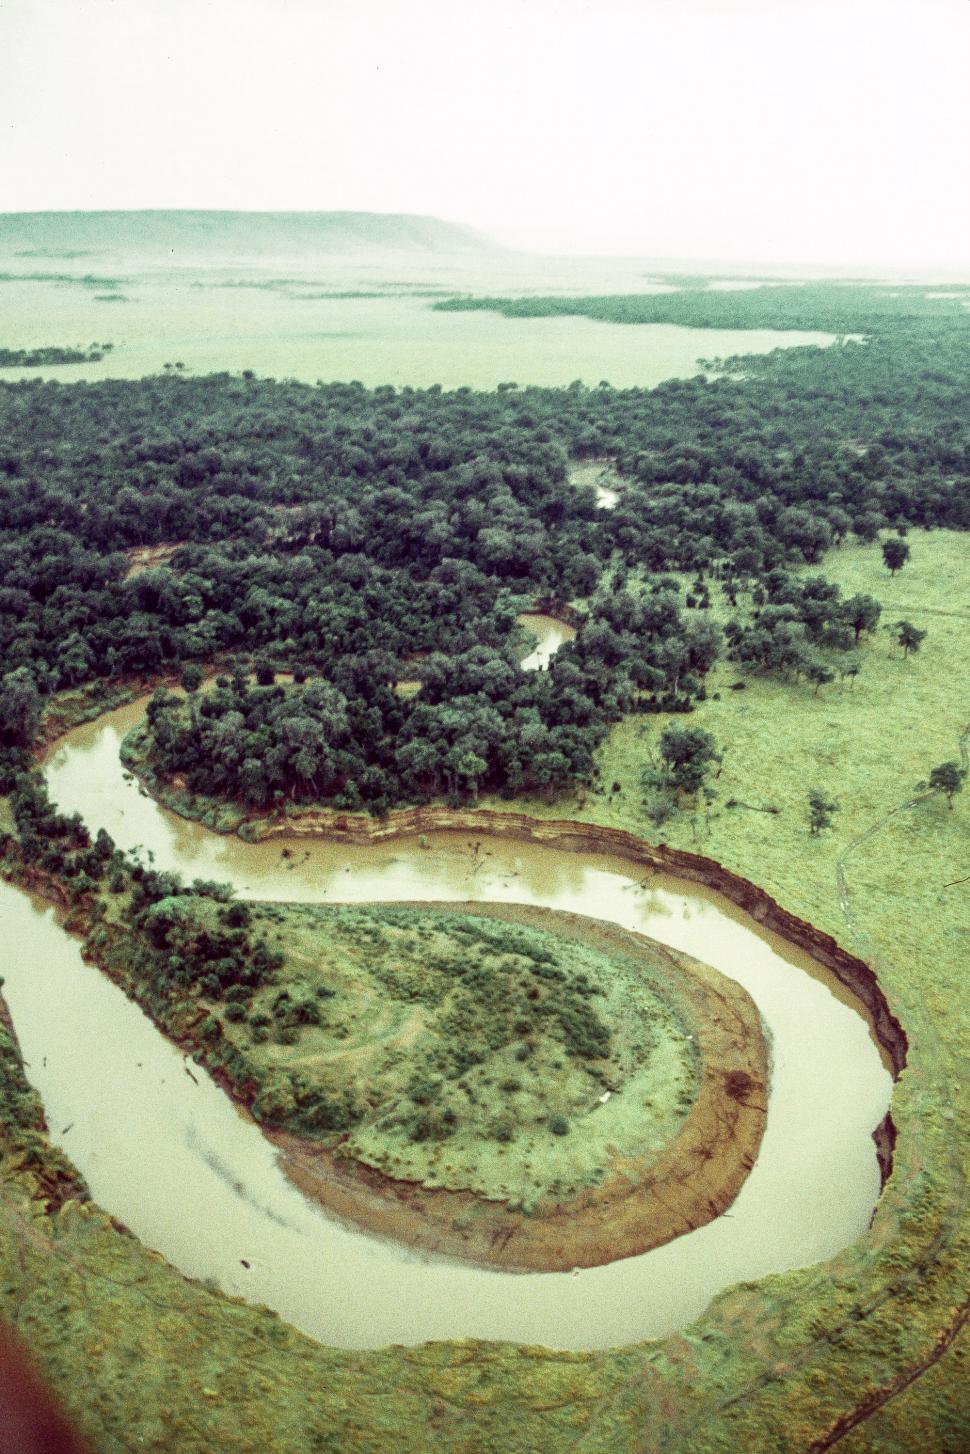 Free Image of Mara River in Tanzania 